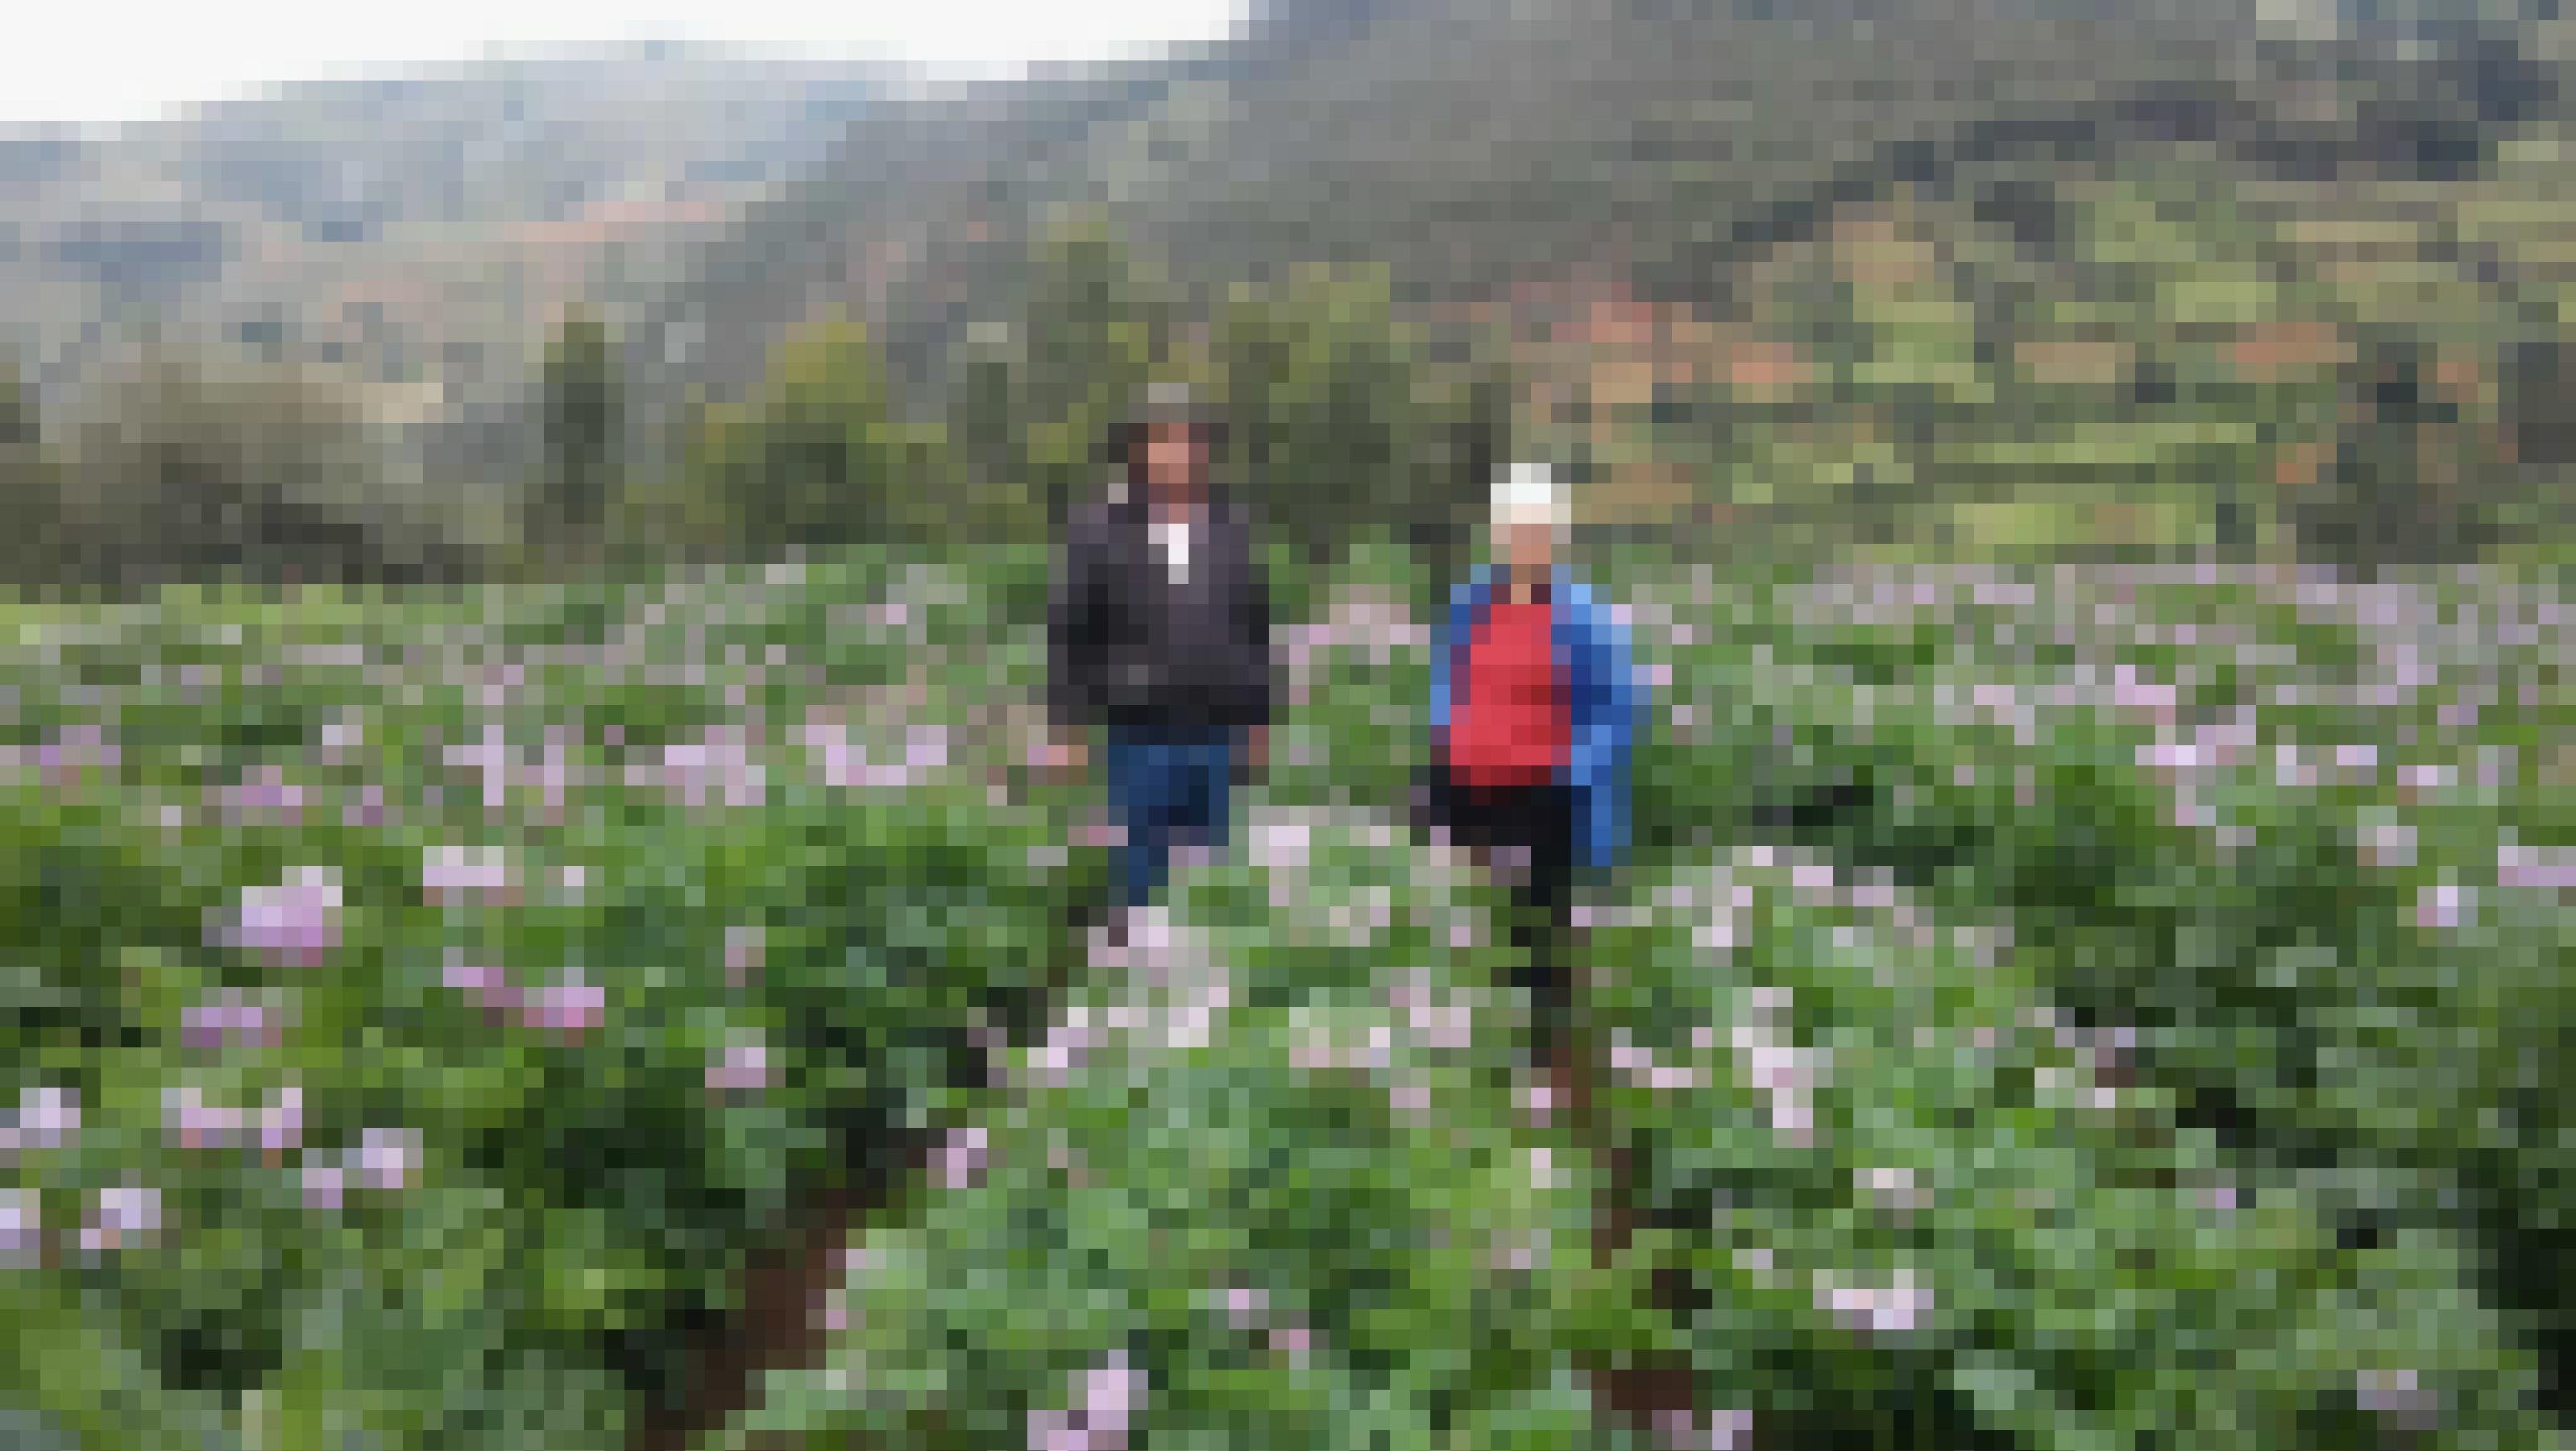 Landschaftsbild, im Hintergrund ein Berg, im Vordergrund grüne Pflanzen mit lila Blüten, blühende Kartoffelpflanzen. Mitten drin ein Mann mit Hut und eine weisshaarige Frau mit Anorak und rotem Pulli.